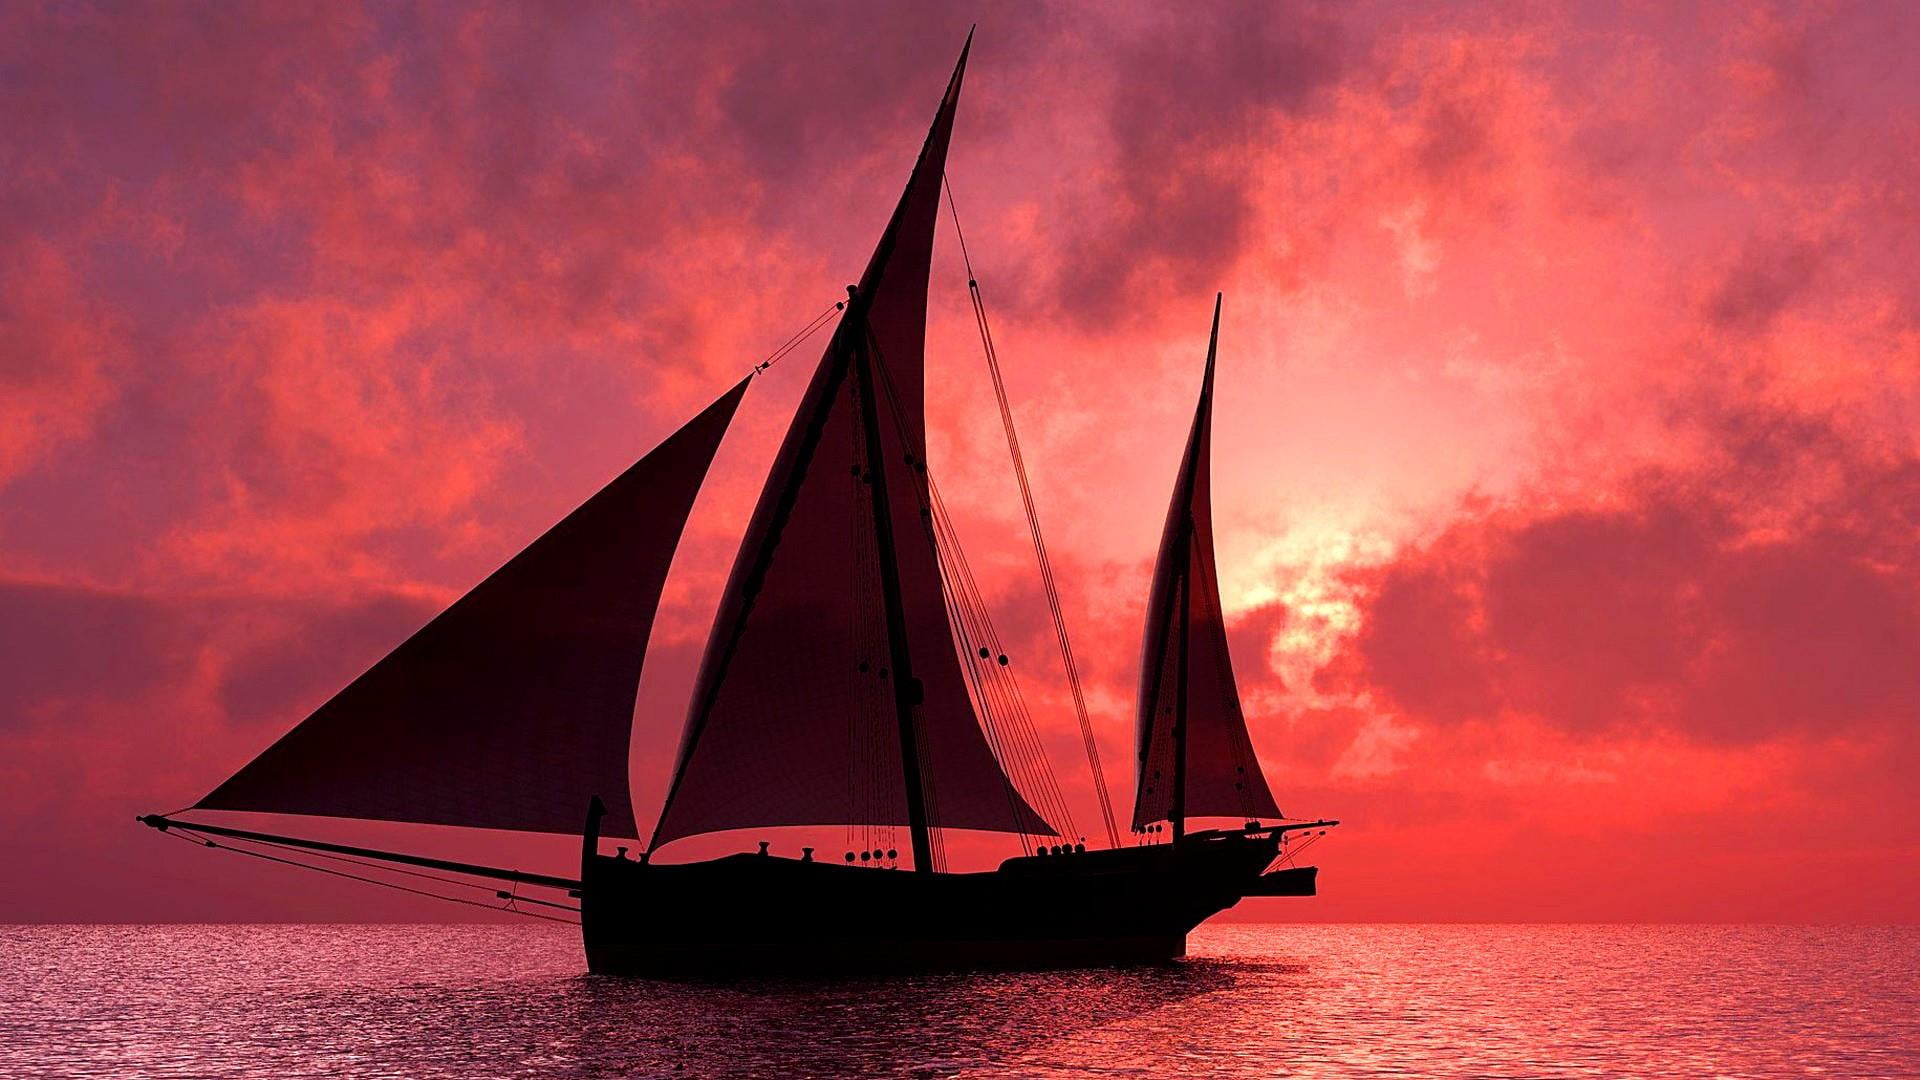 sky, sailing ship, galway hooker, calm, sailboat, fishing boat